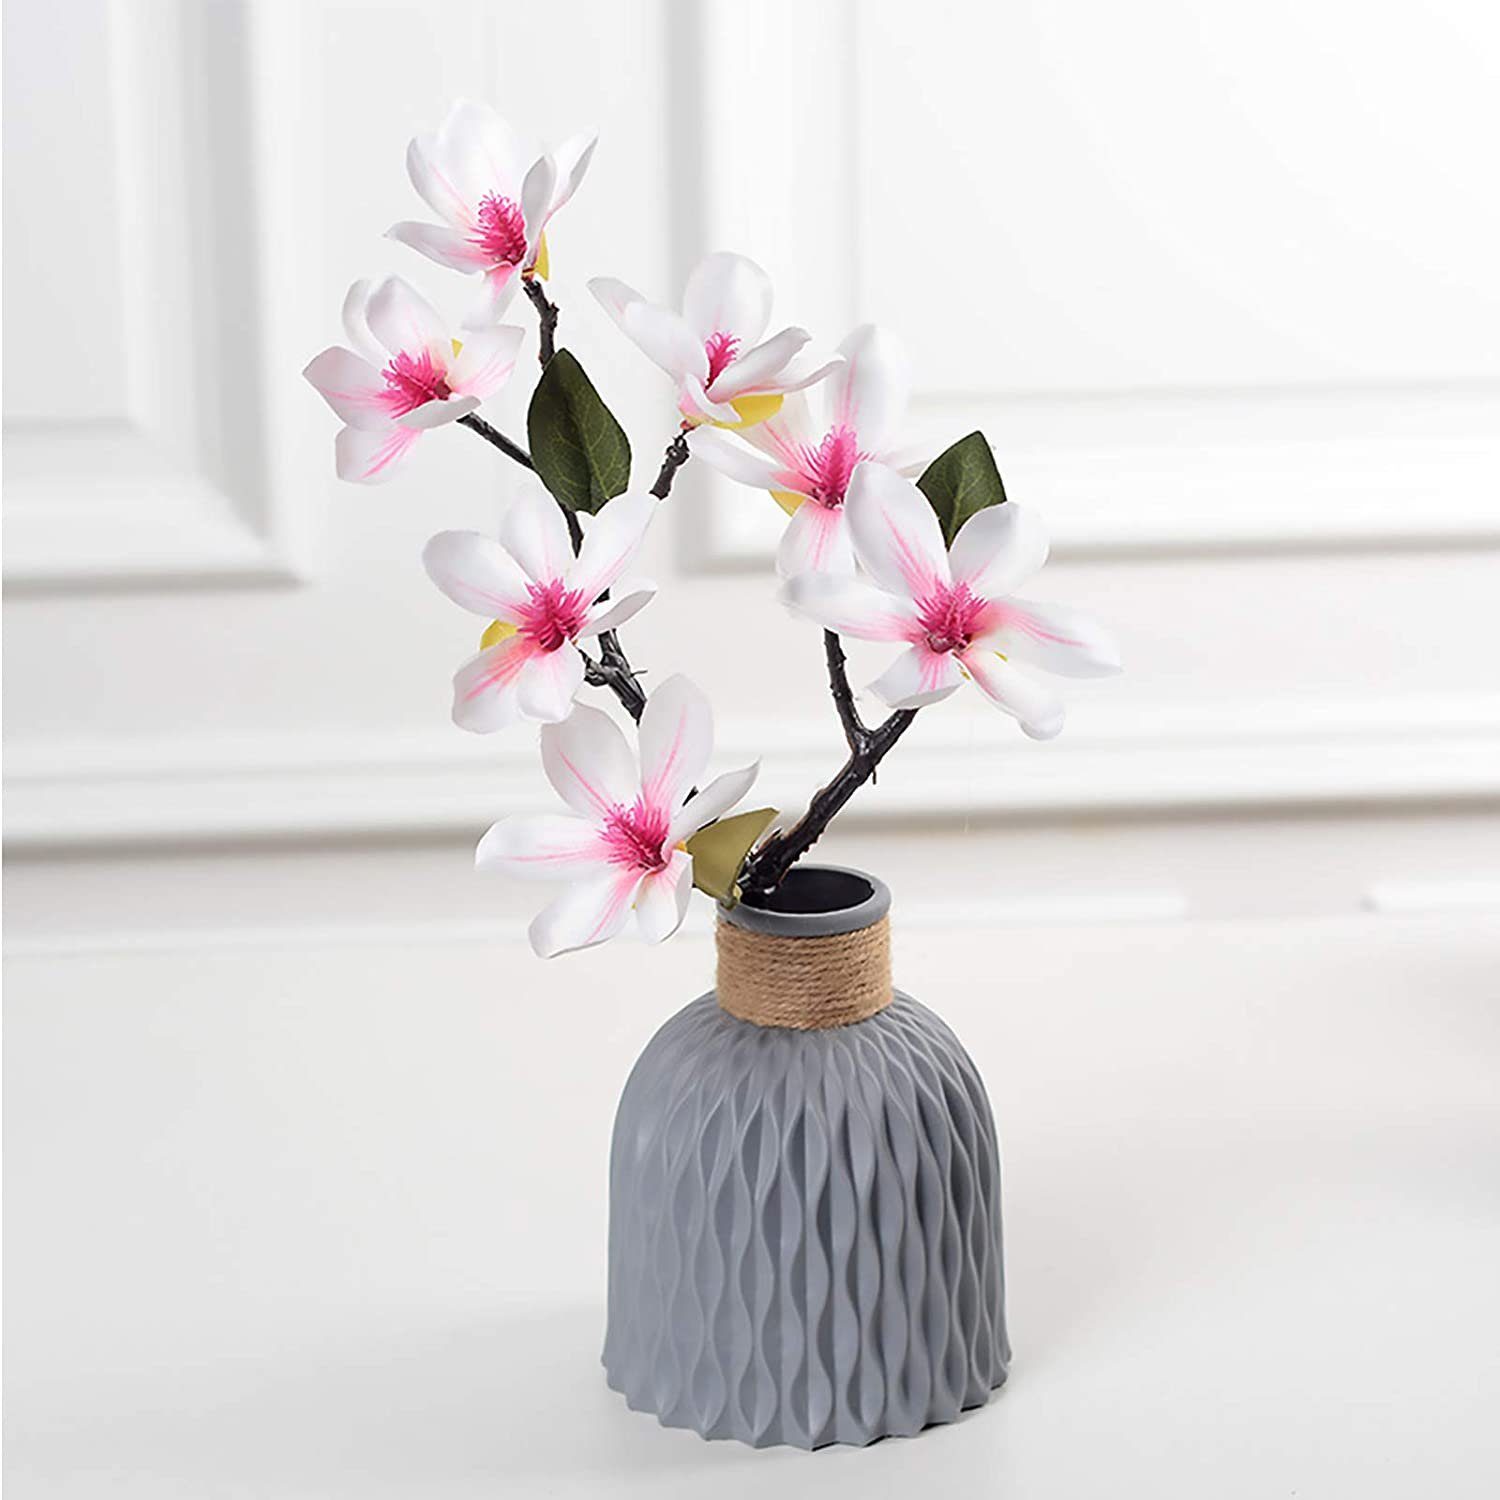 Jormftte Dekovase Nordic Vase, Kunststoff Vasen für Blumen